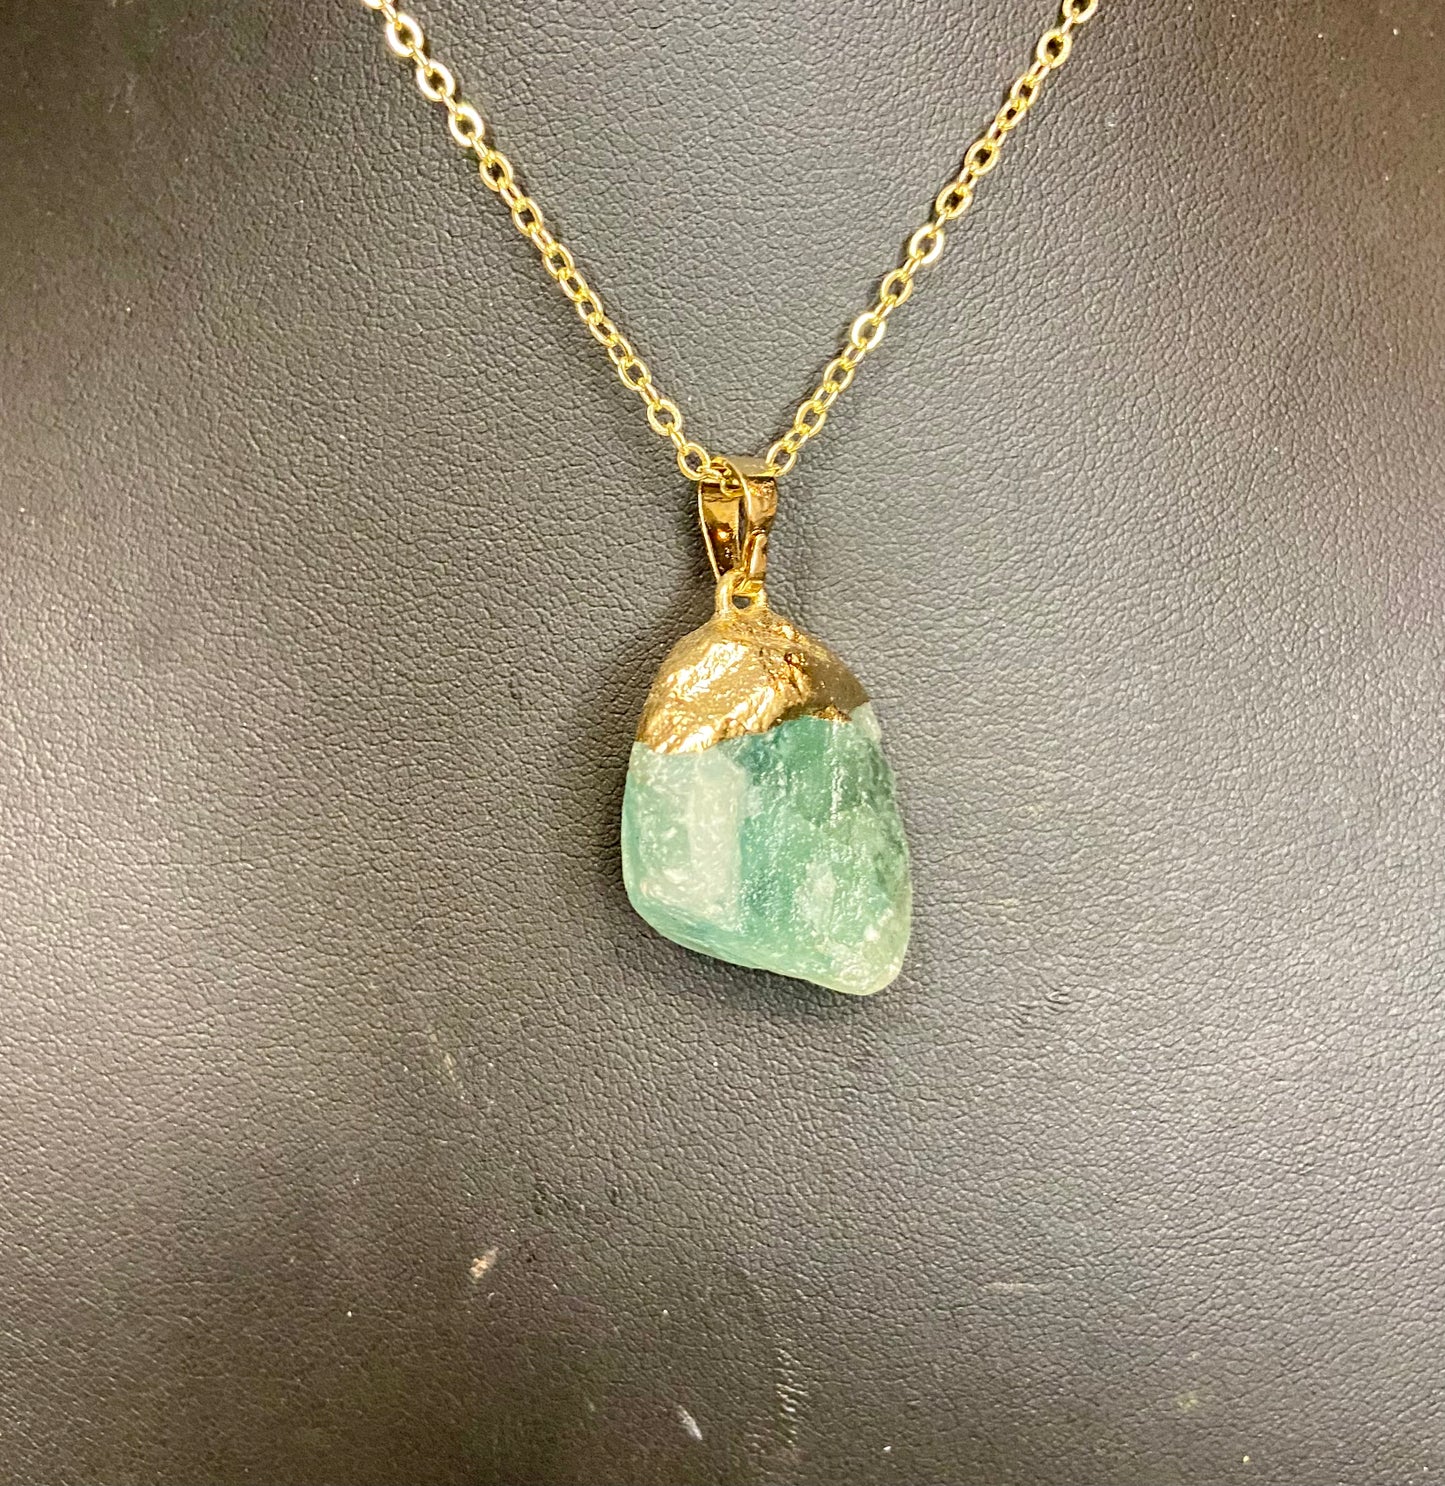 Tumbled stone necklace